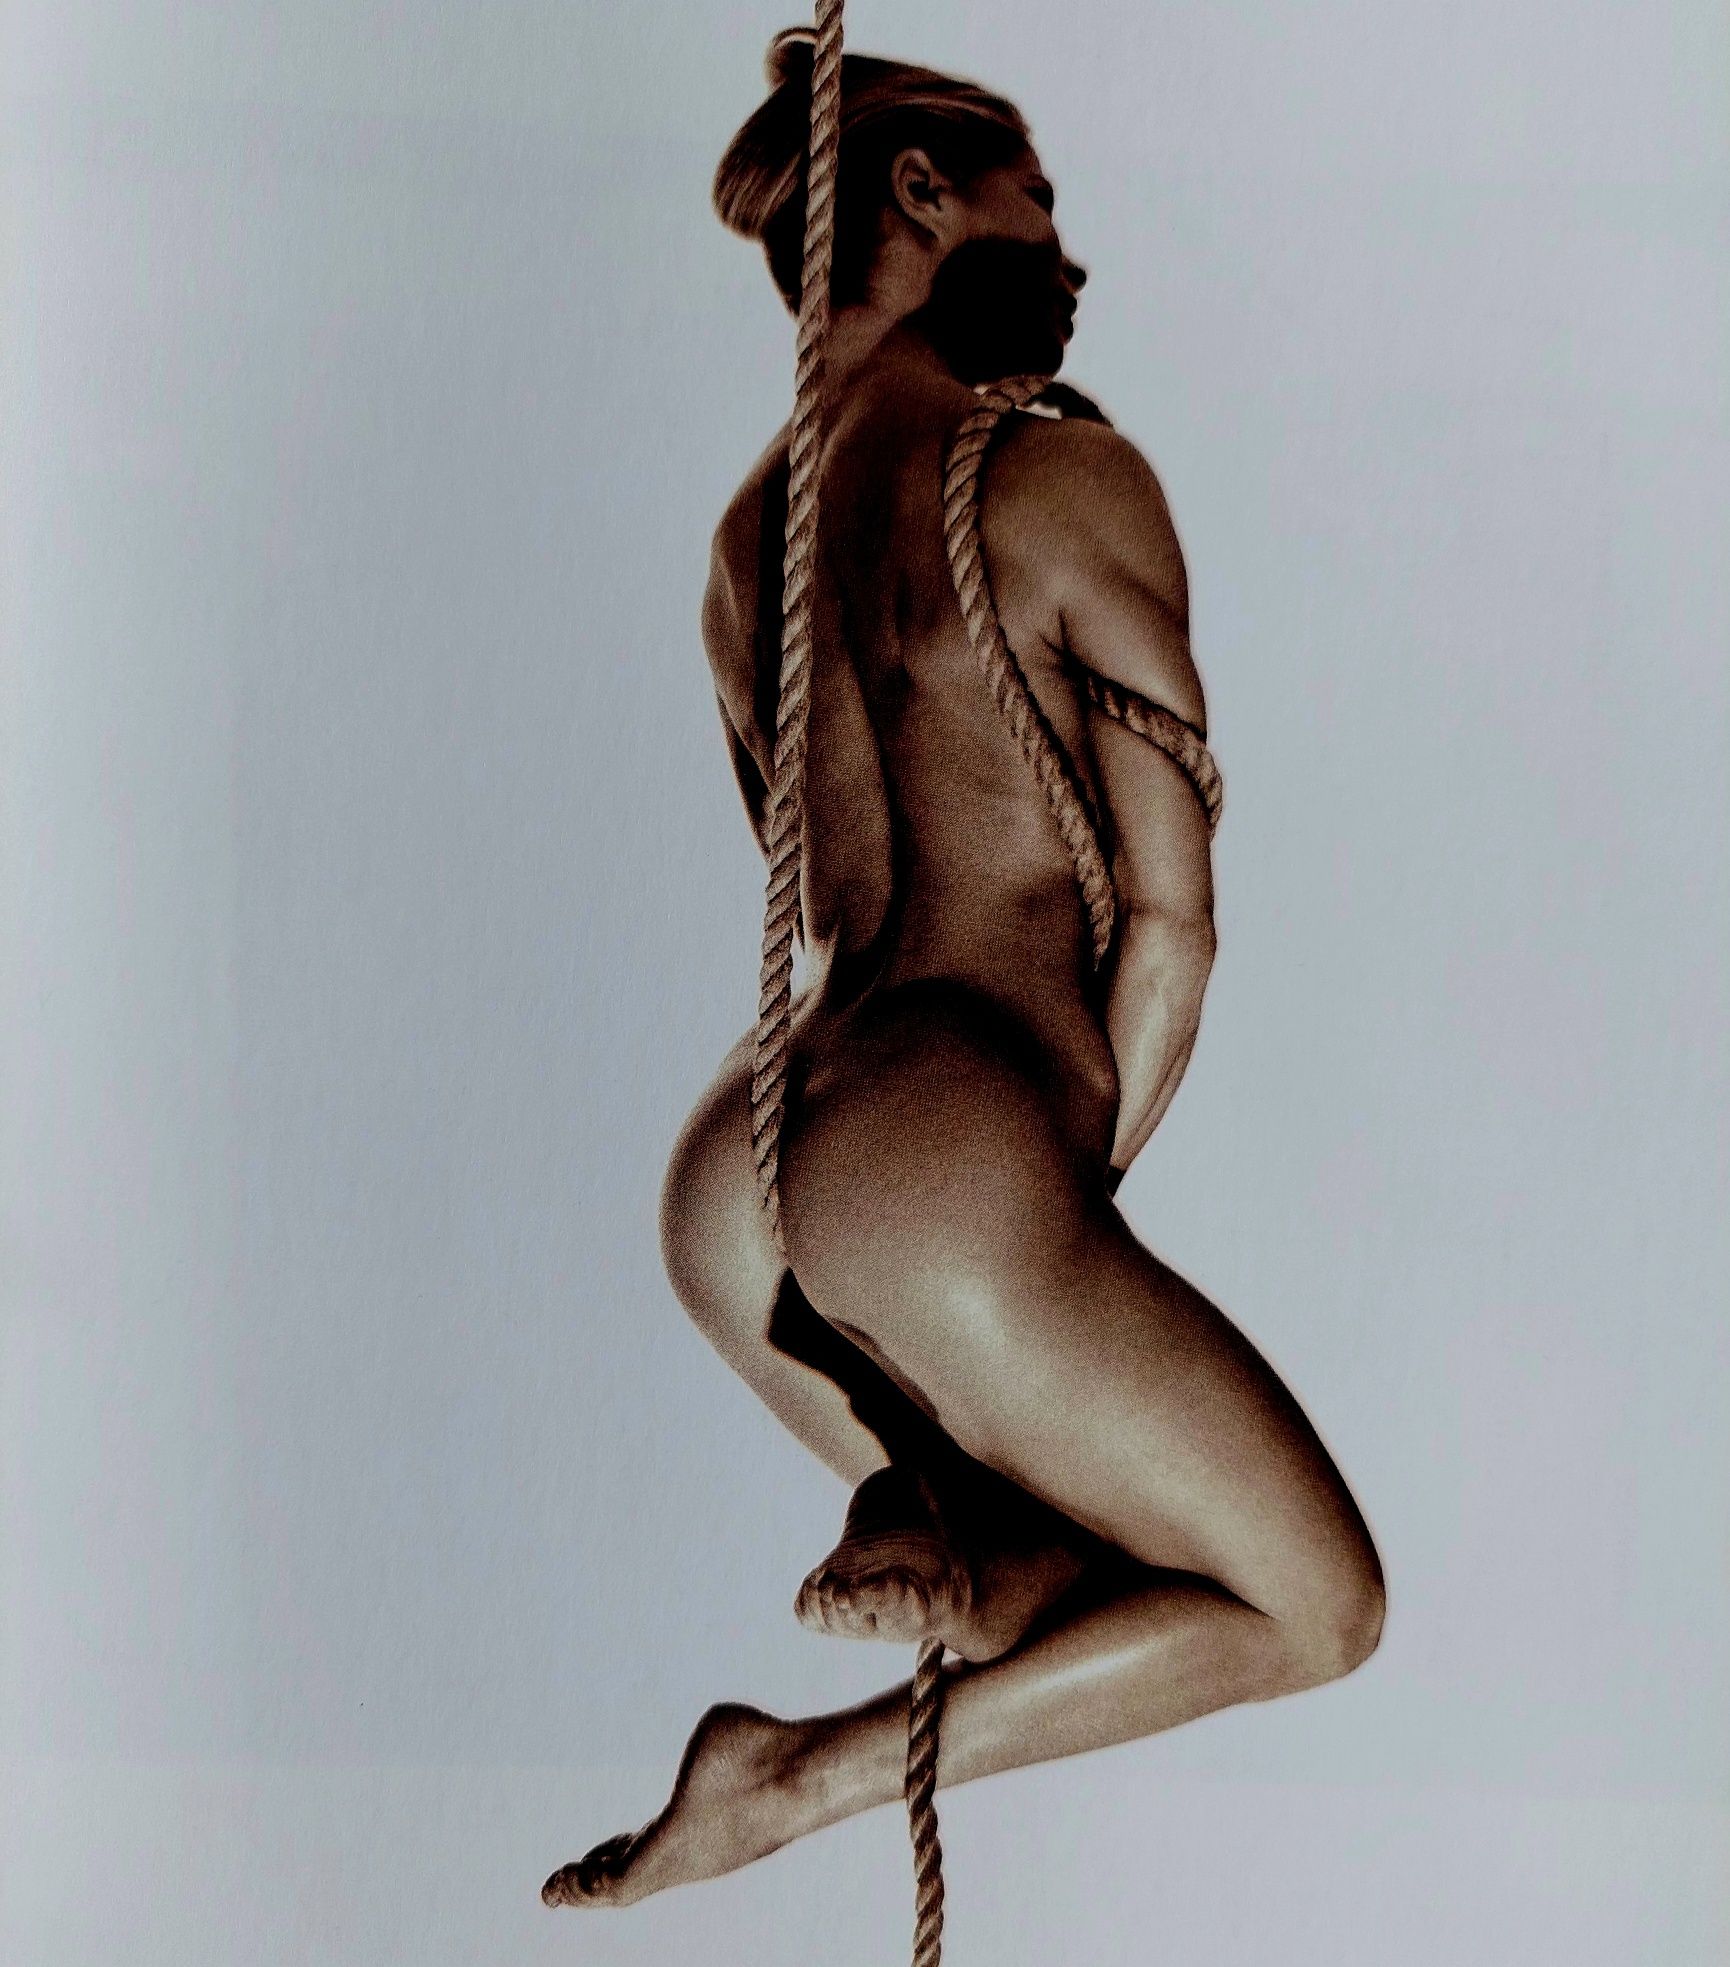 Venus, 2000 - Erotic